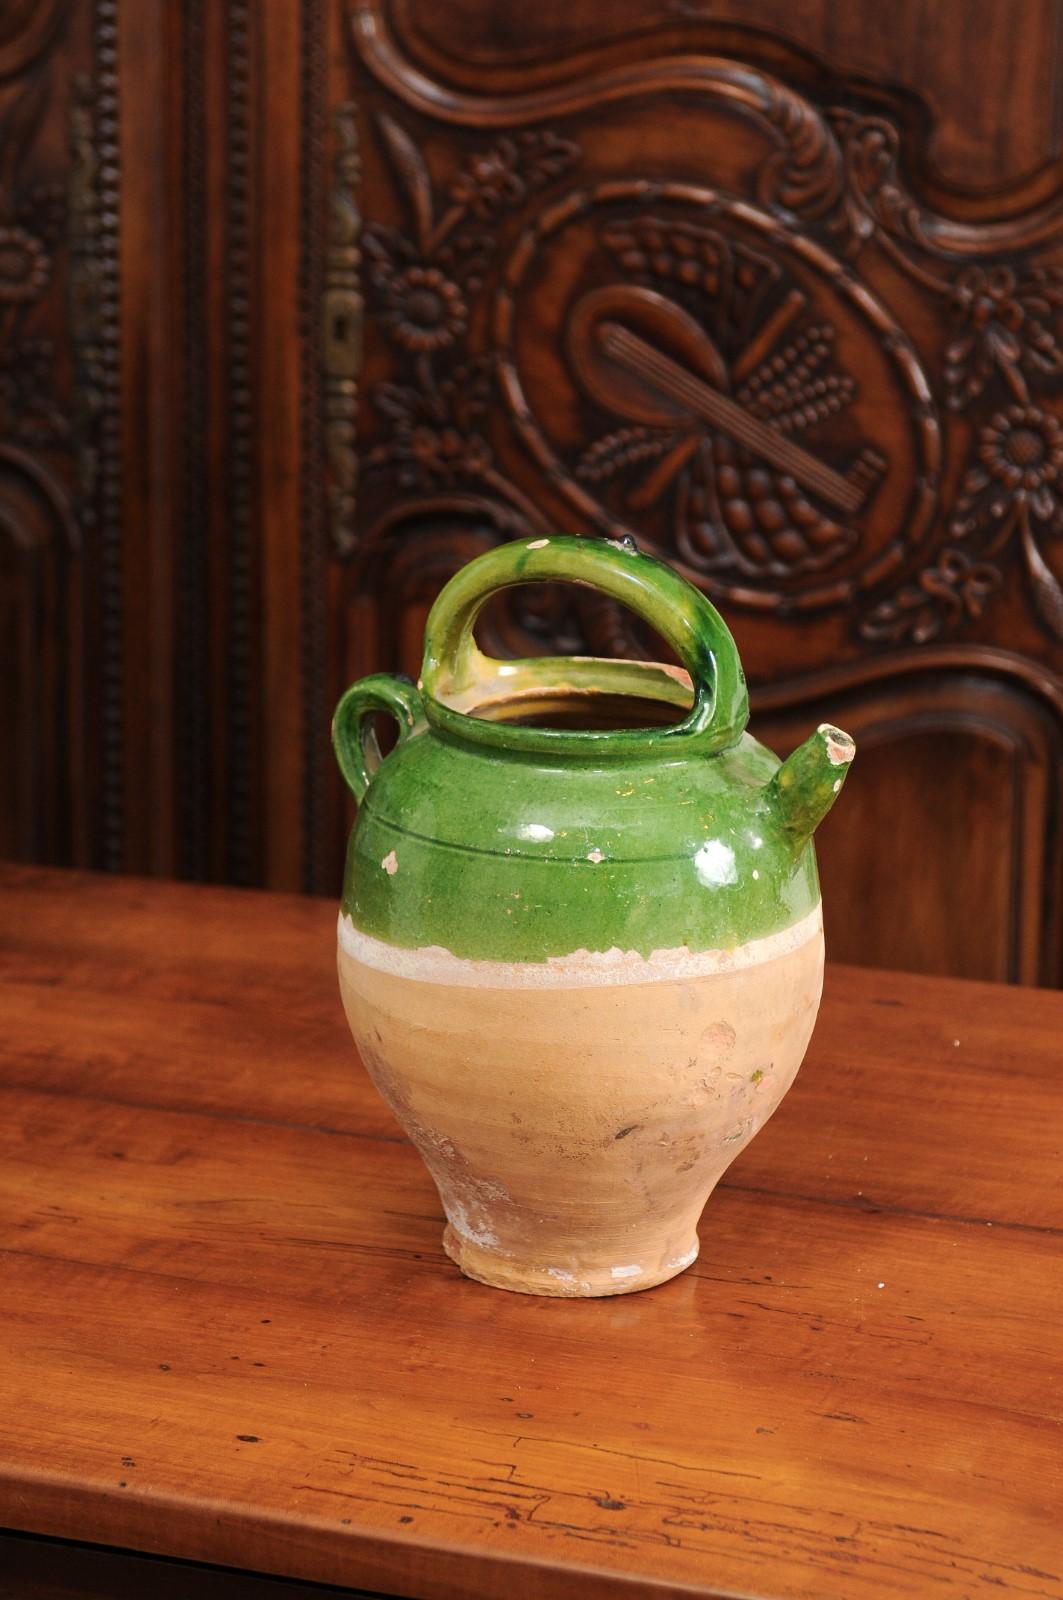 Une cruche en poterie émaillée verte de style provincial français du 19e siècle, avec deux poignées, un bec verseur frontal et une patine vieillie. Créée dans le sud de la France au cours du XIXe siècle, cette cruche présente une section supérieure